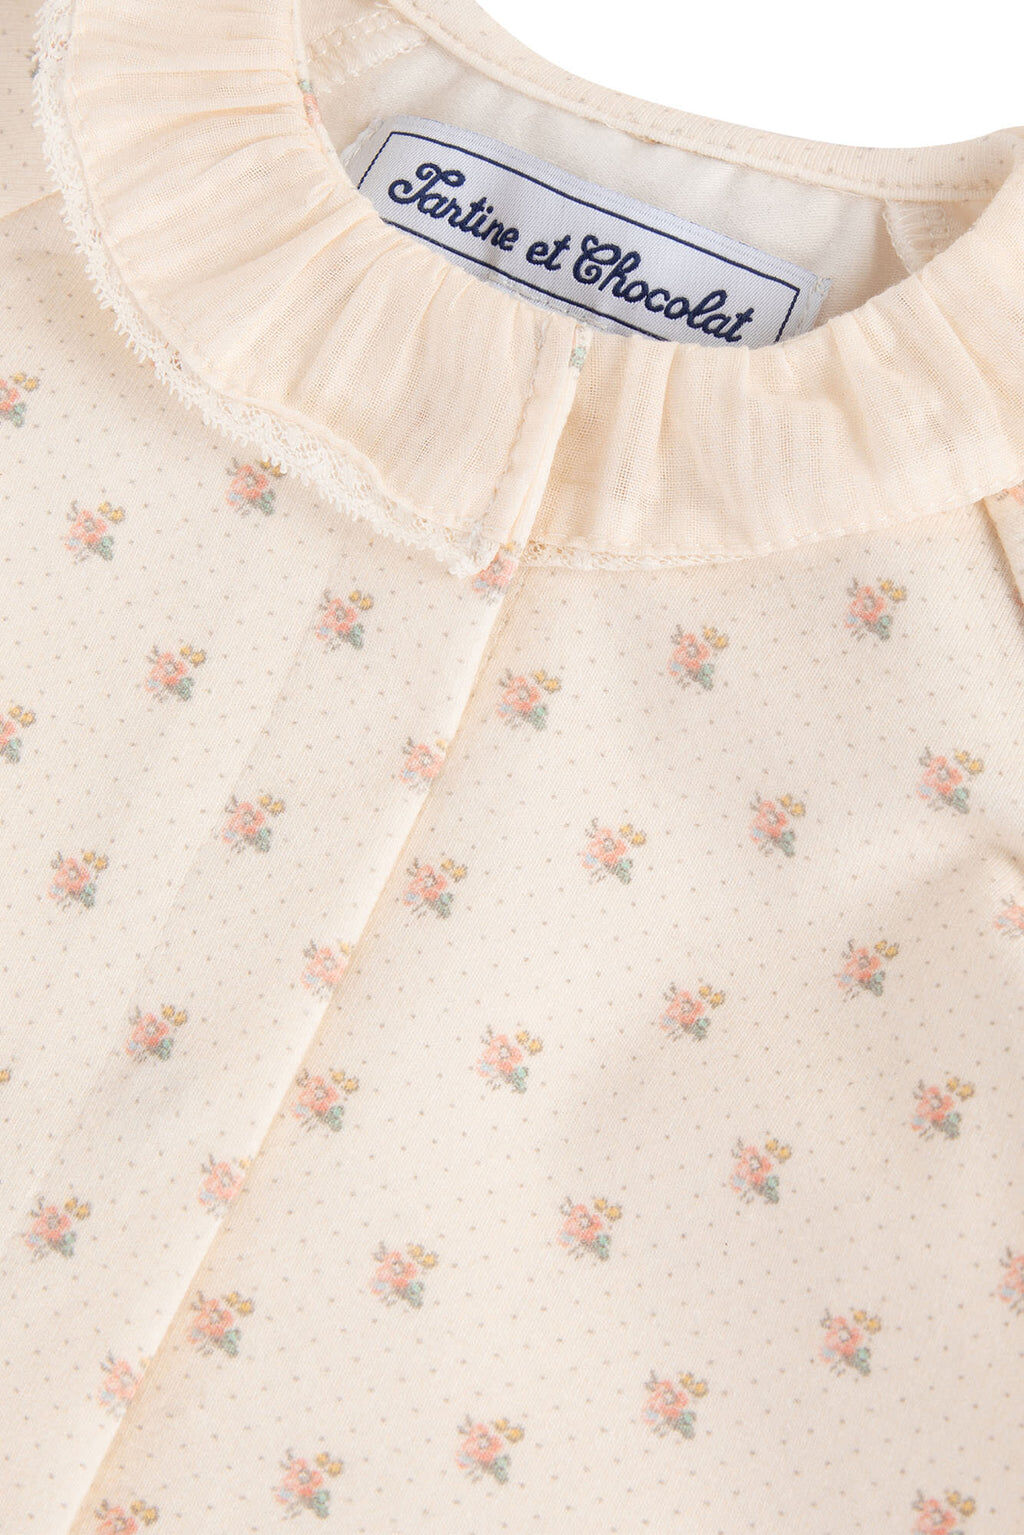 Pyjamas - Jersey Print floral Ruffled collar